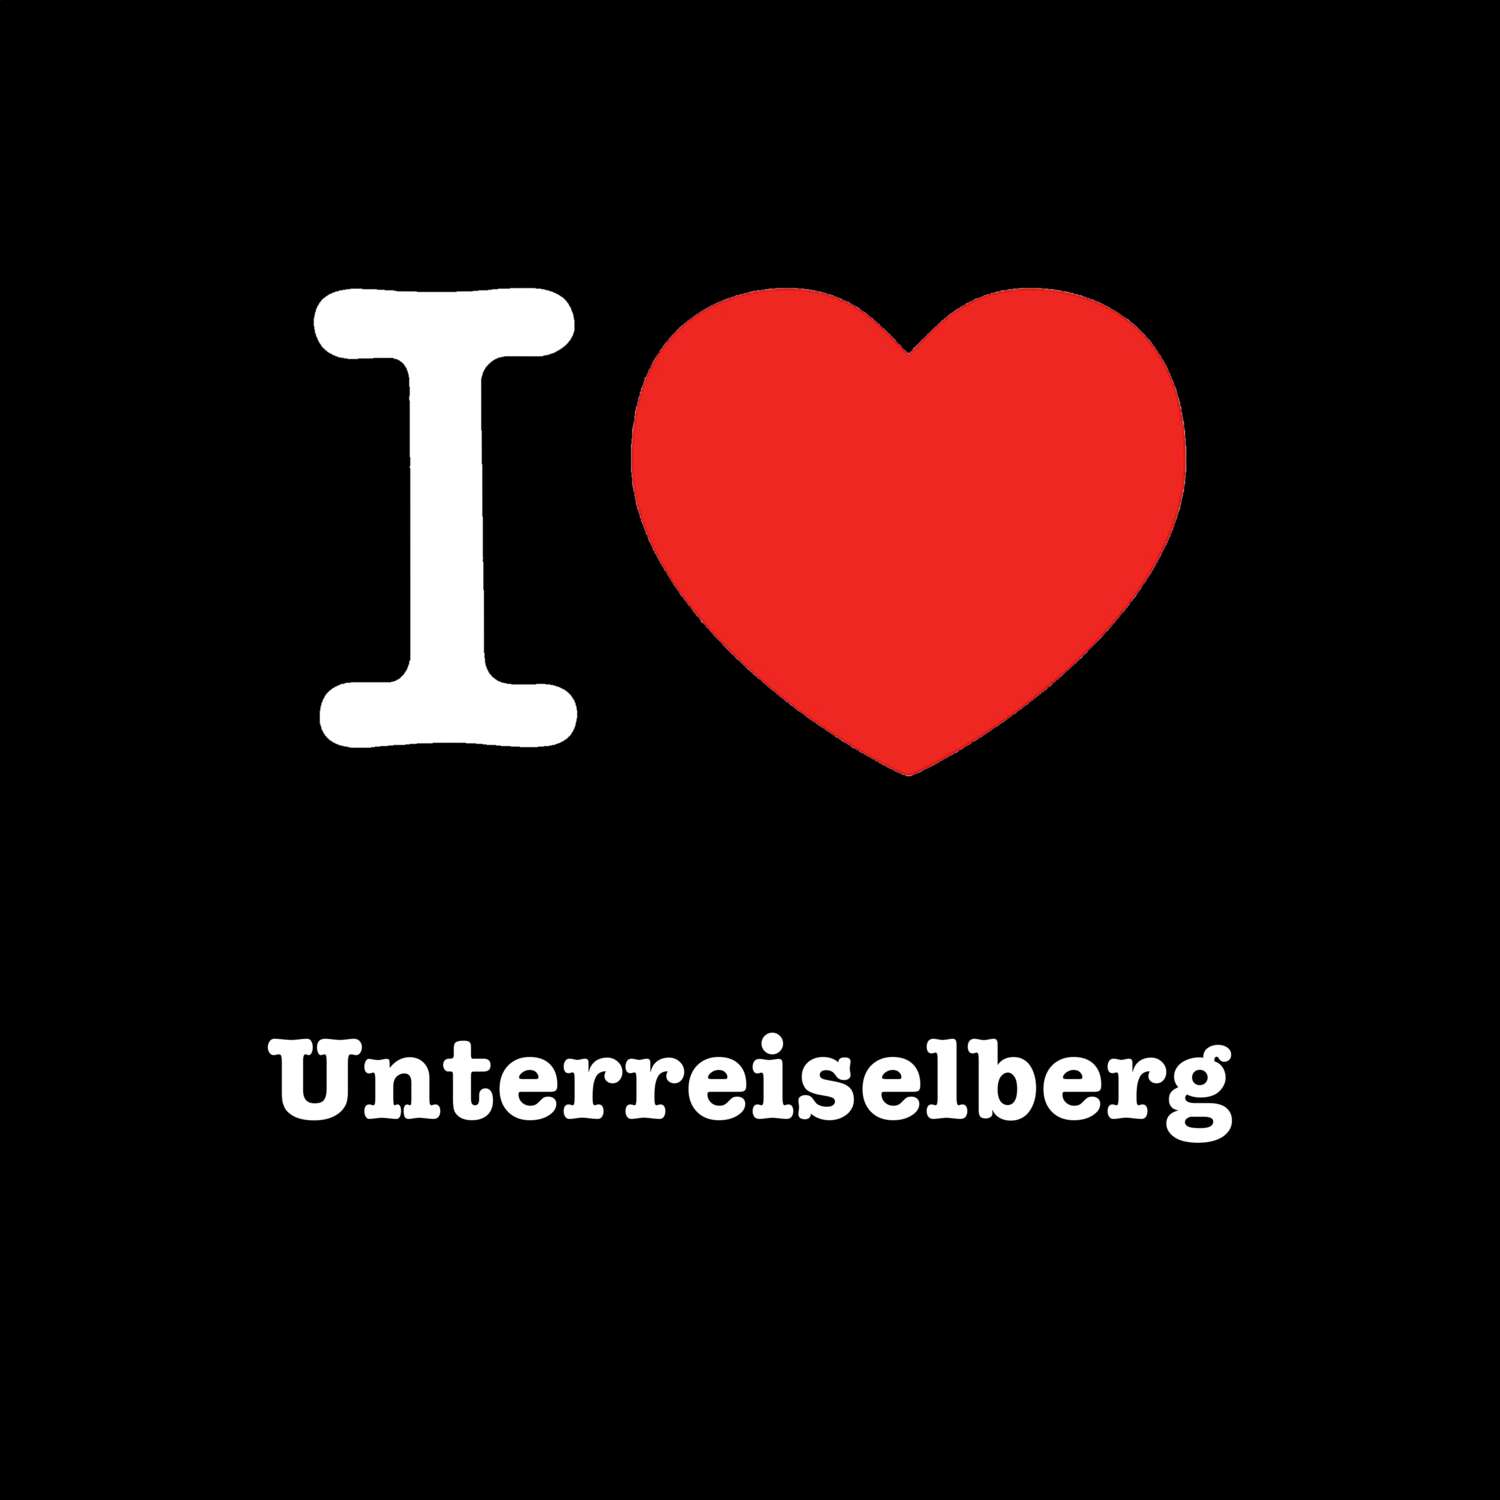 Unterreiselberg T-Shirt »I love«